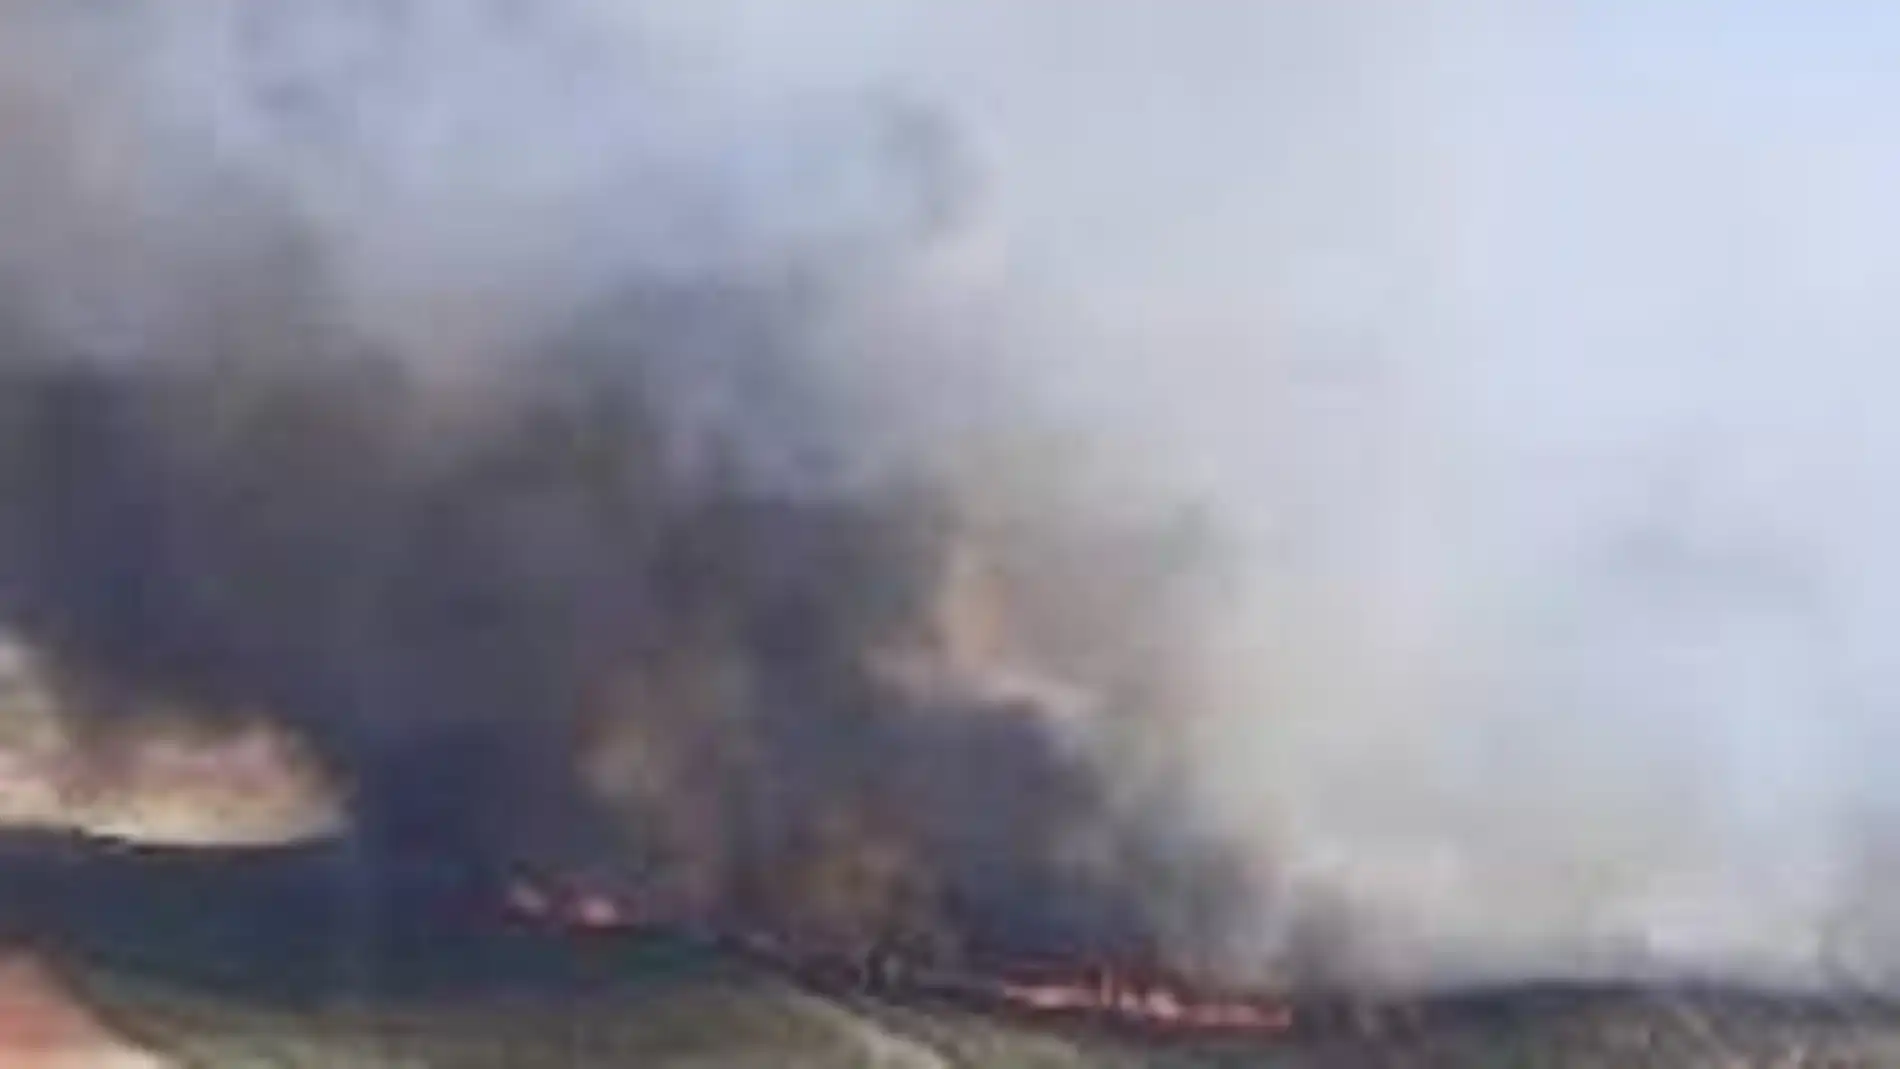 Casi medio centenar de bomberos y nueve medios aéreos combaten un incendio declarado en Belalcázar